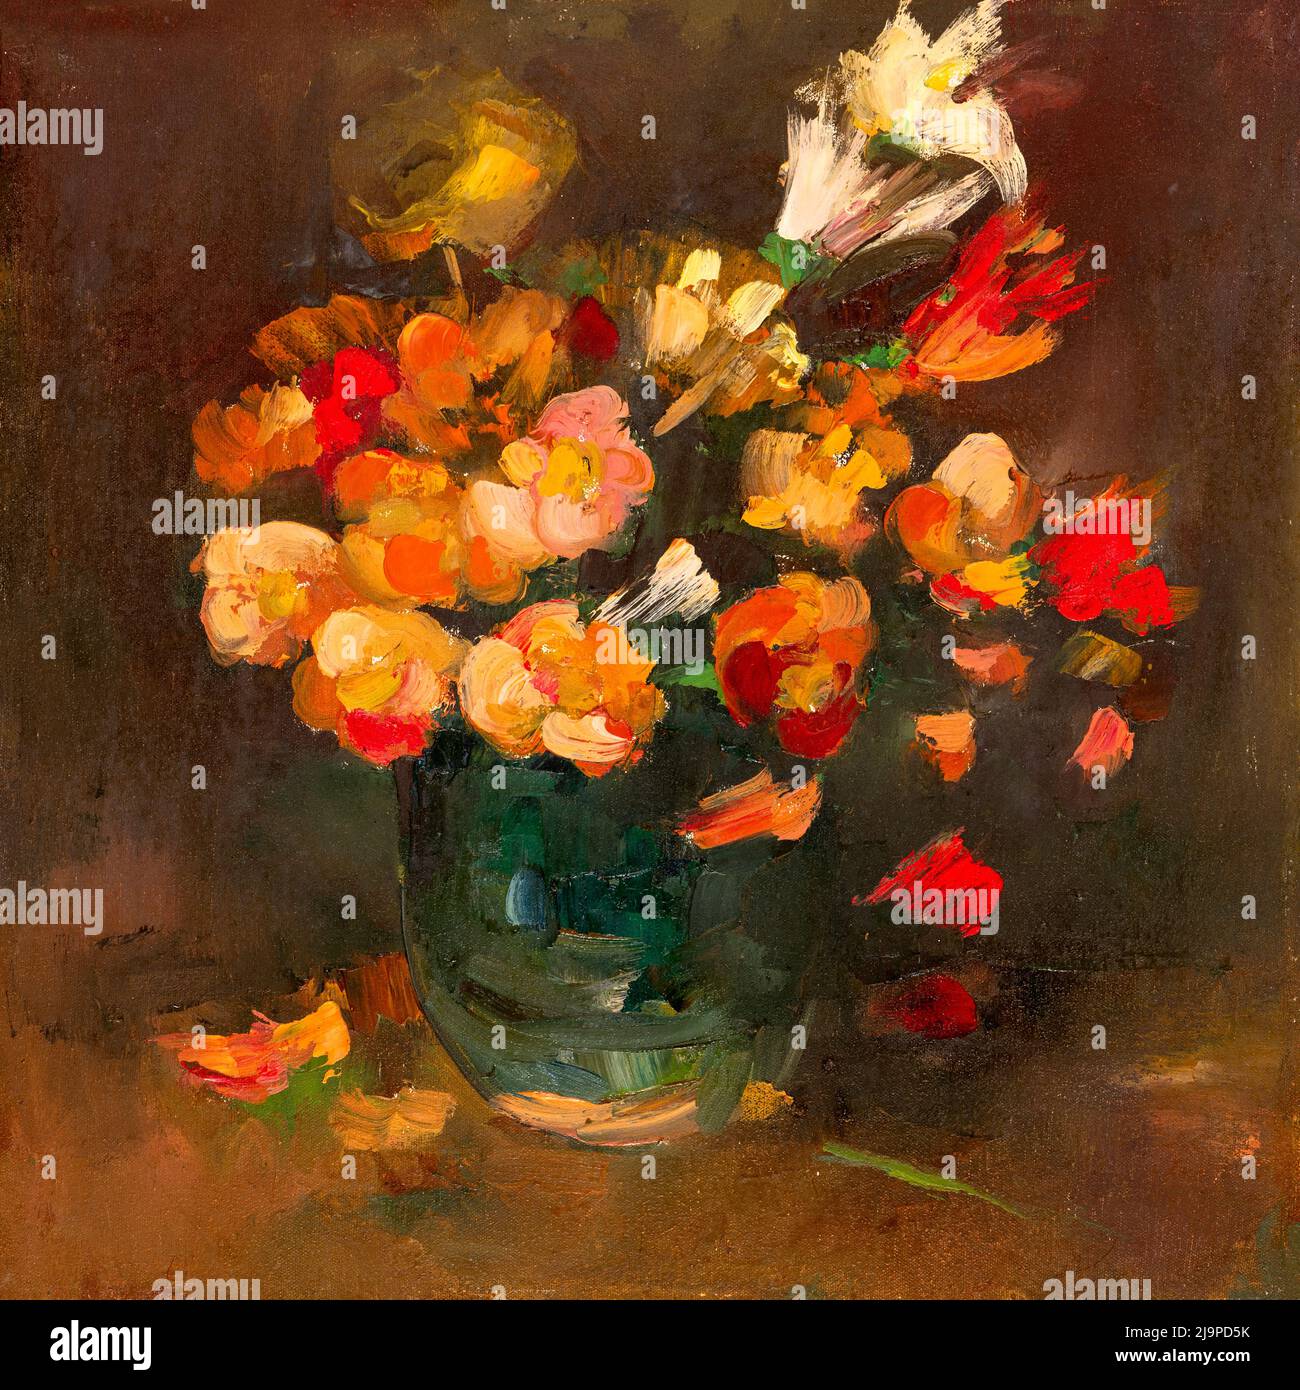 Encore la vie fait main peinture à l'huile sur toile représentant des fleurs bouquet dans un vase, style impressionniste. Banque D'Images